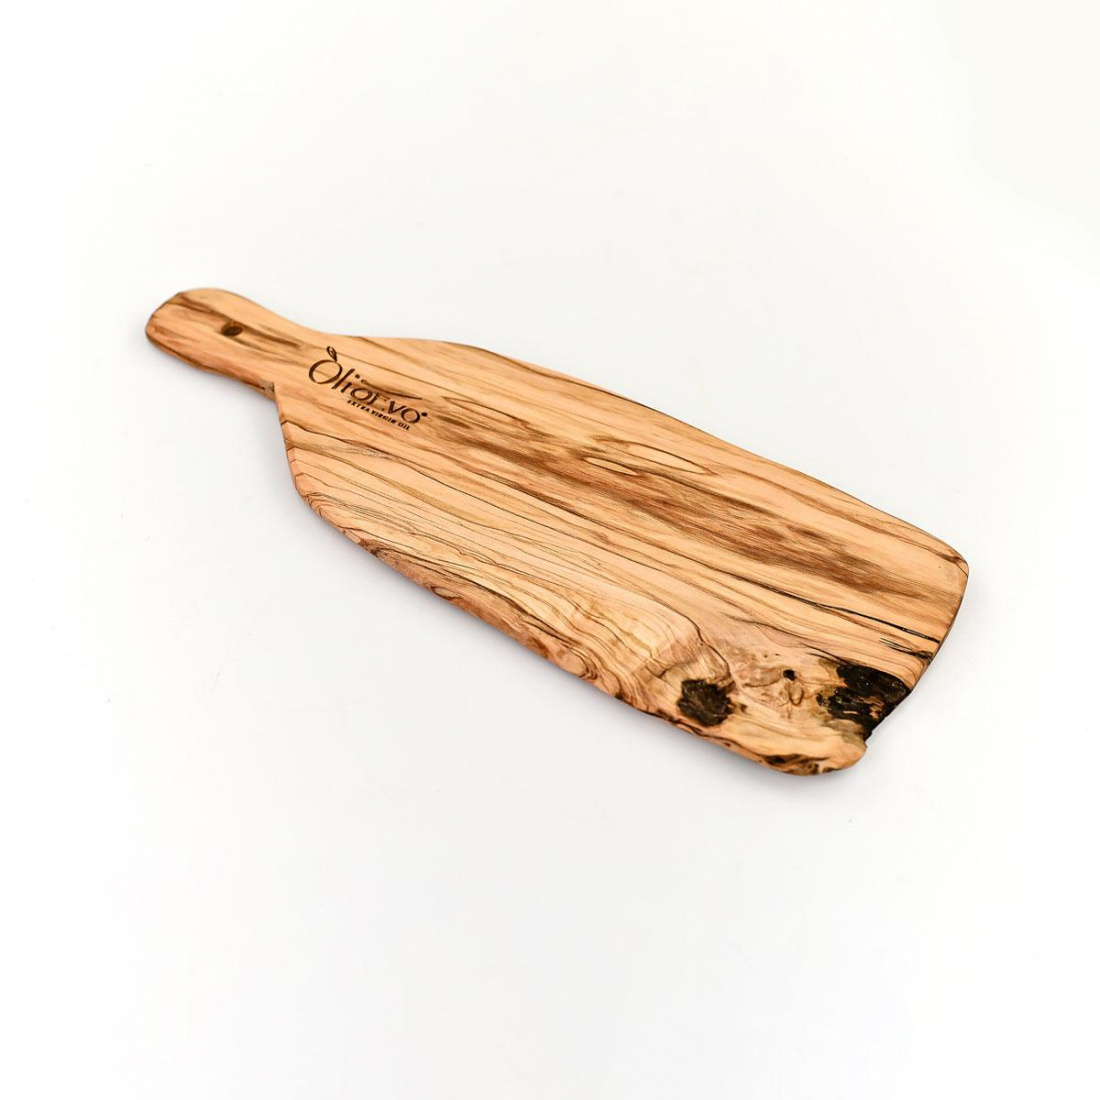 Tagliere in legno d'olivo artigianale 36 x 15 cm.